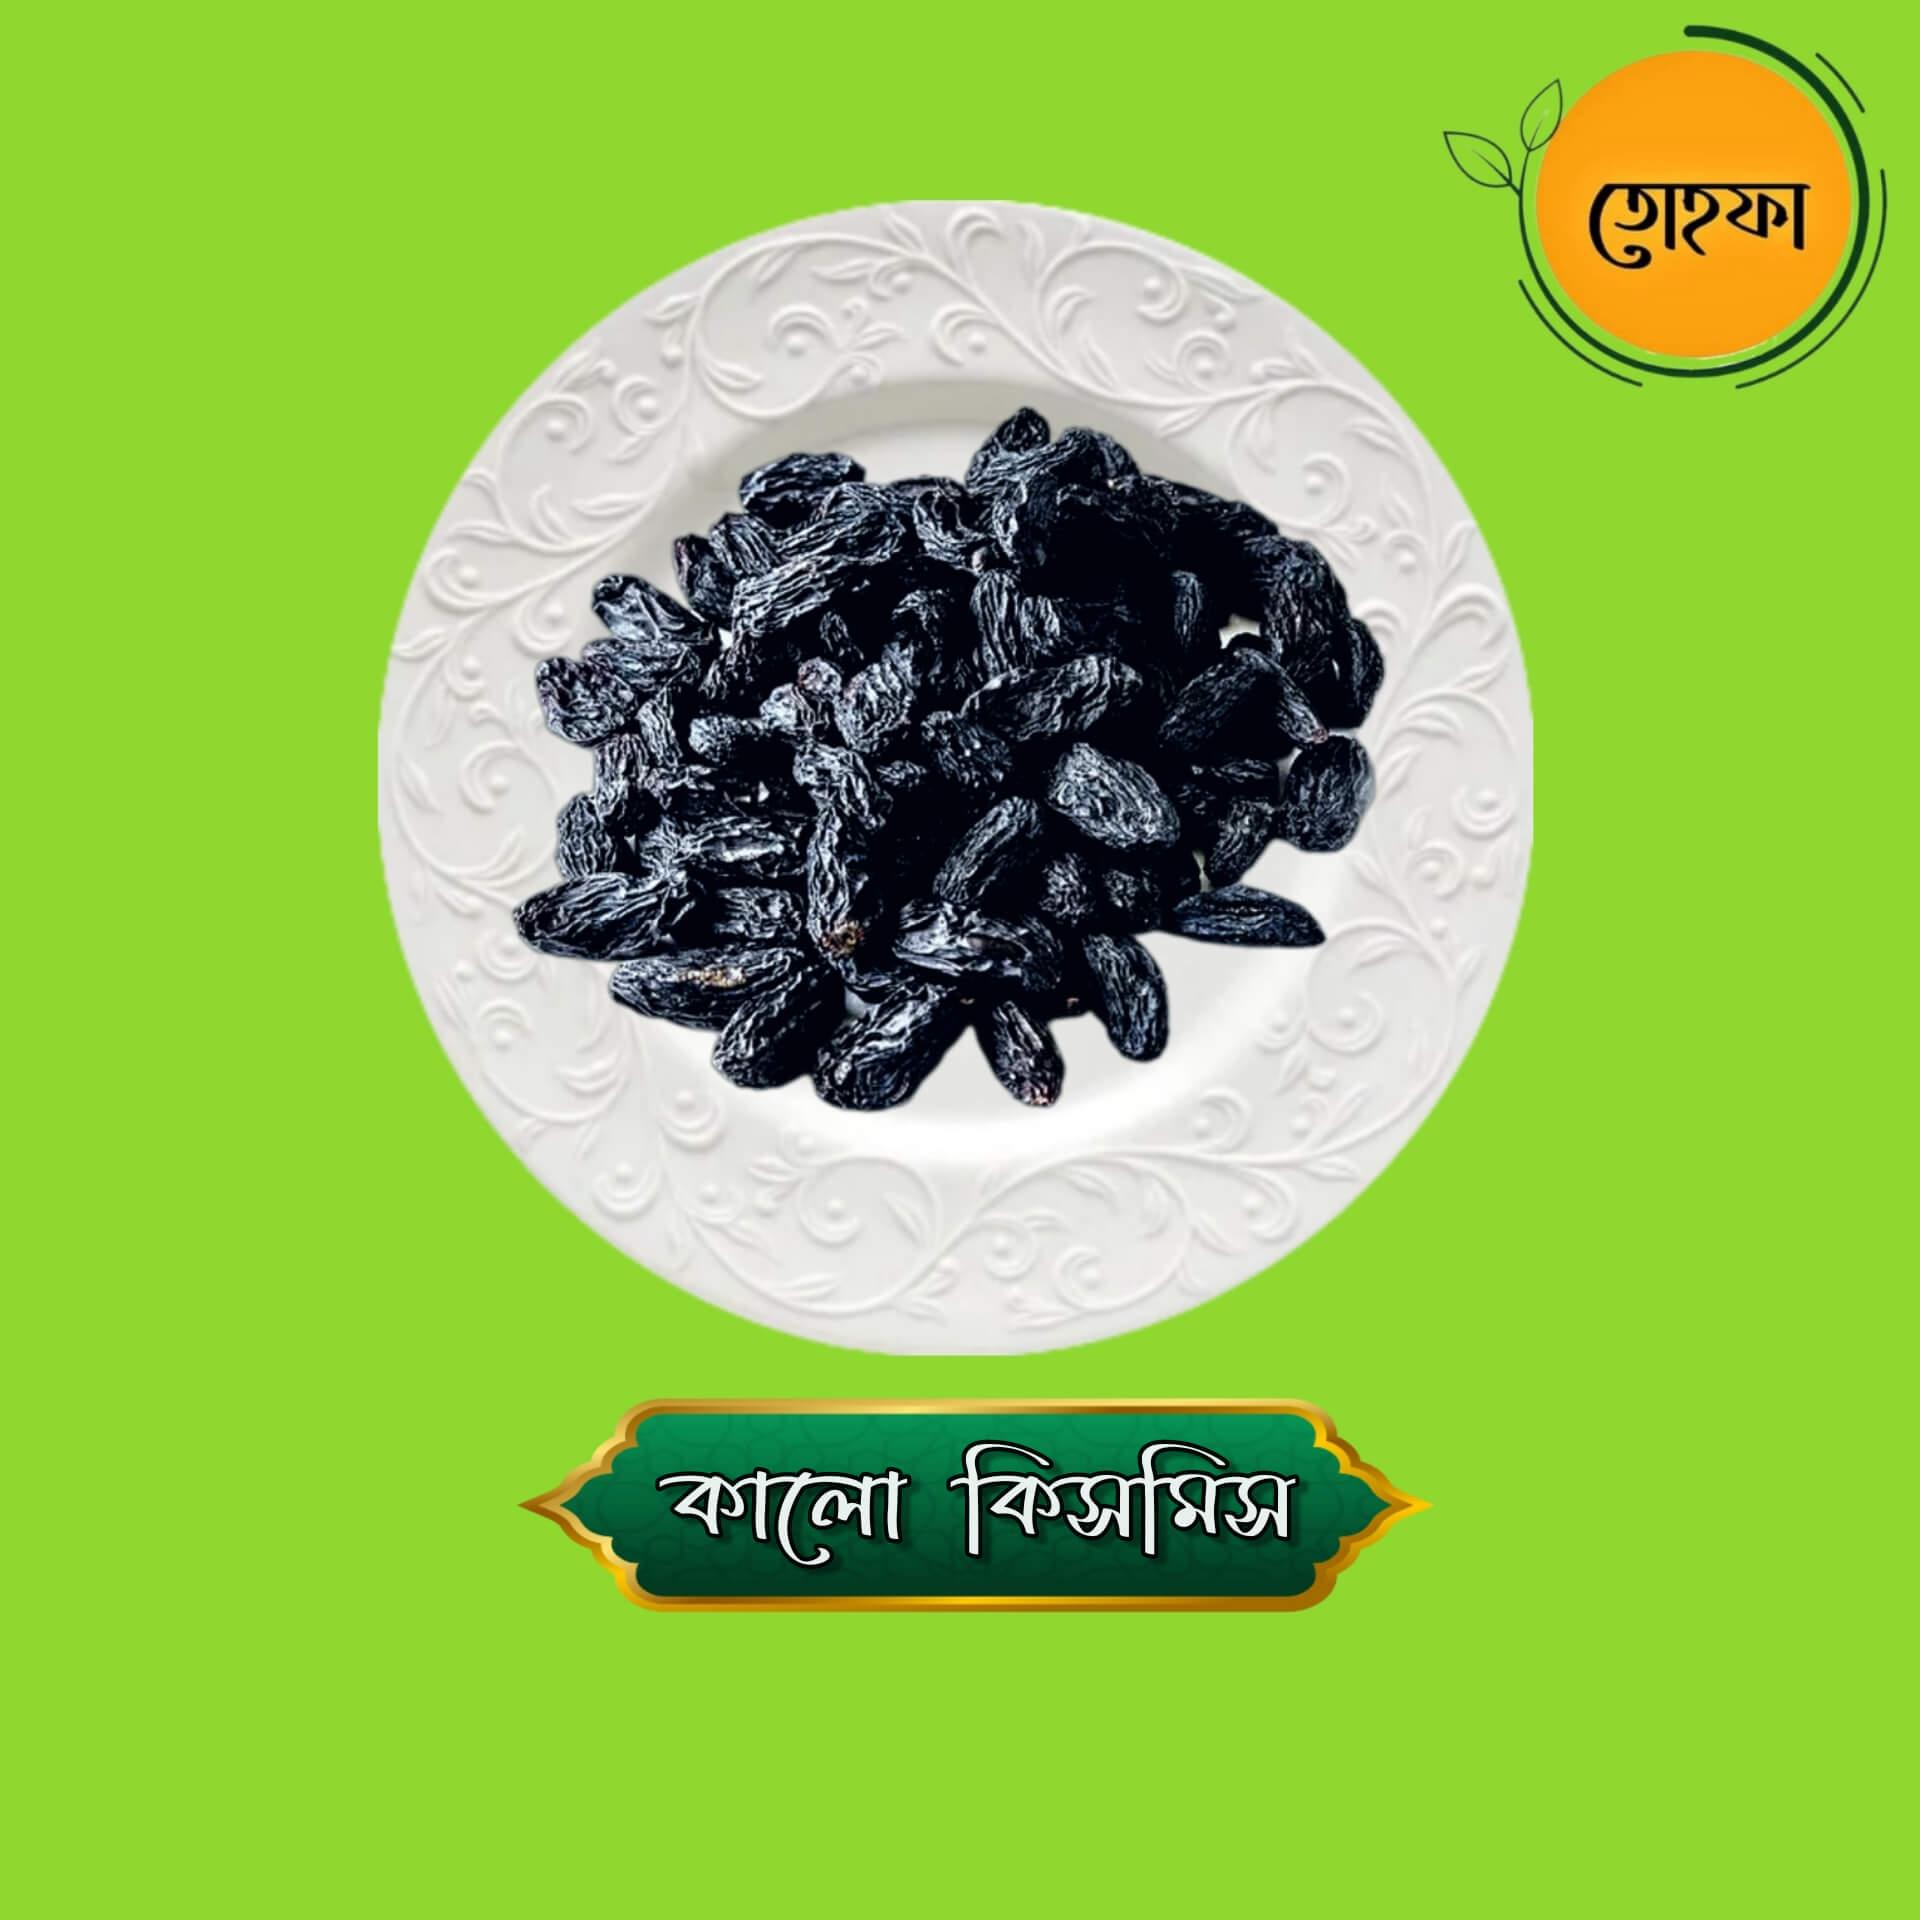 Black Raisins-Kismis (কালো কিসমিস)